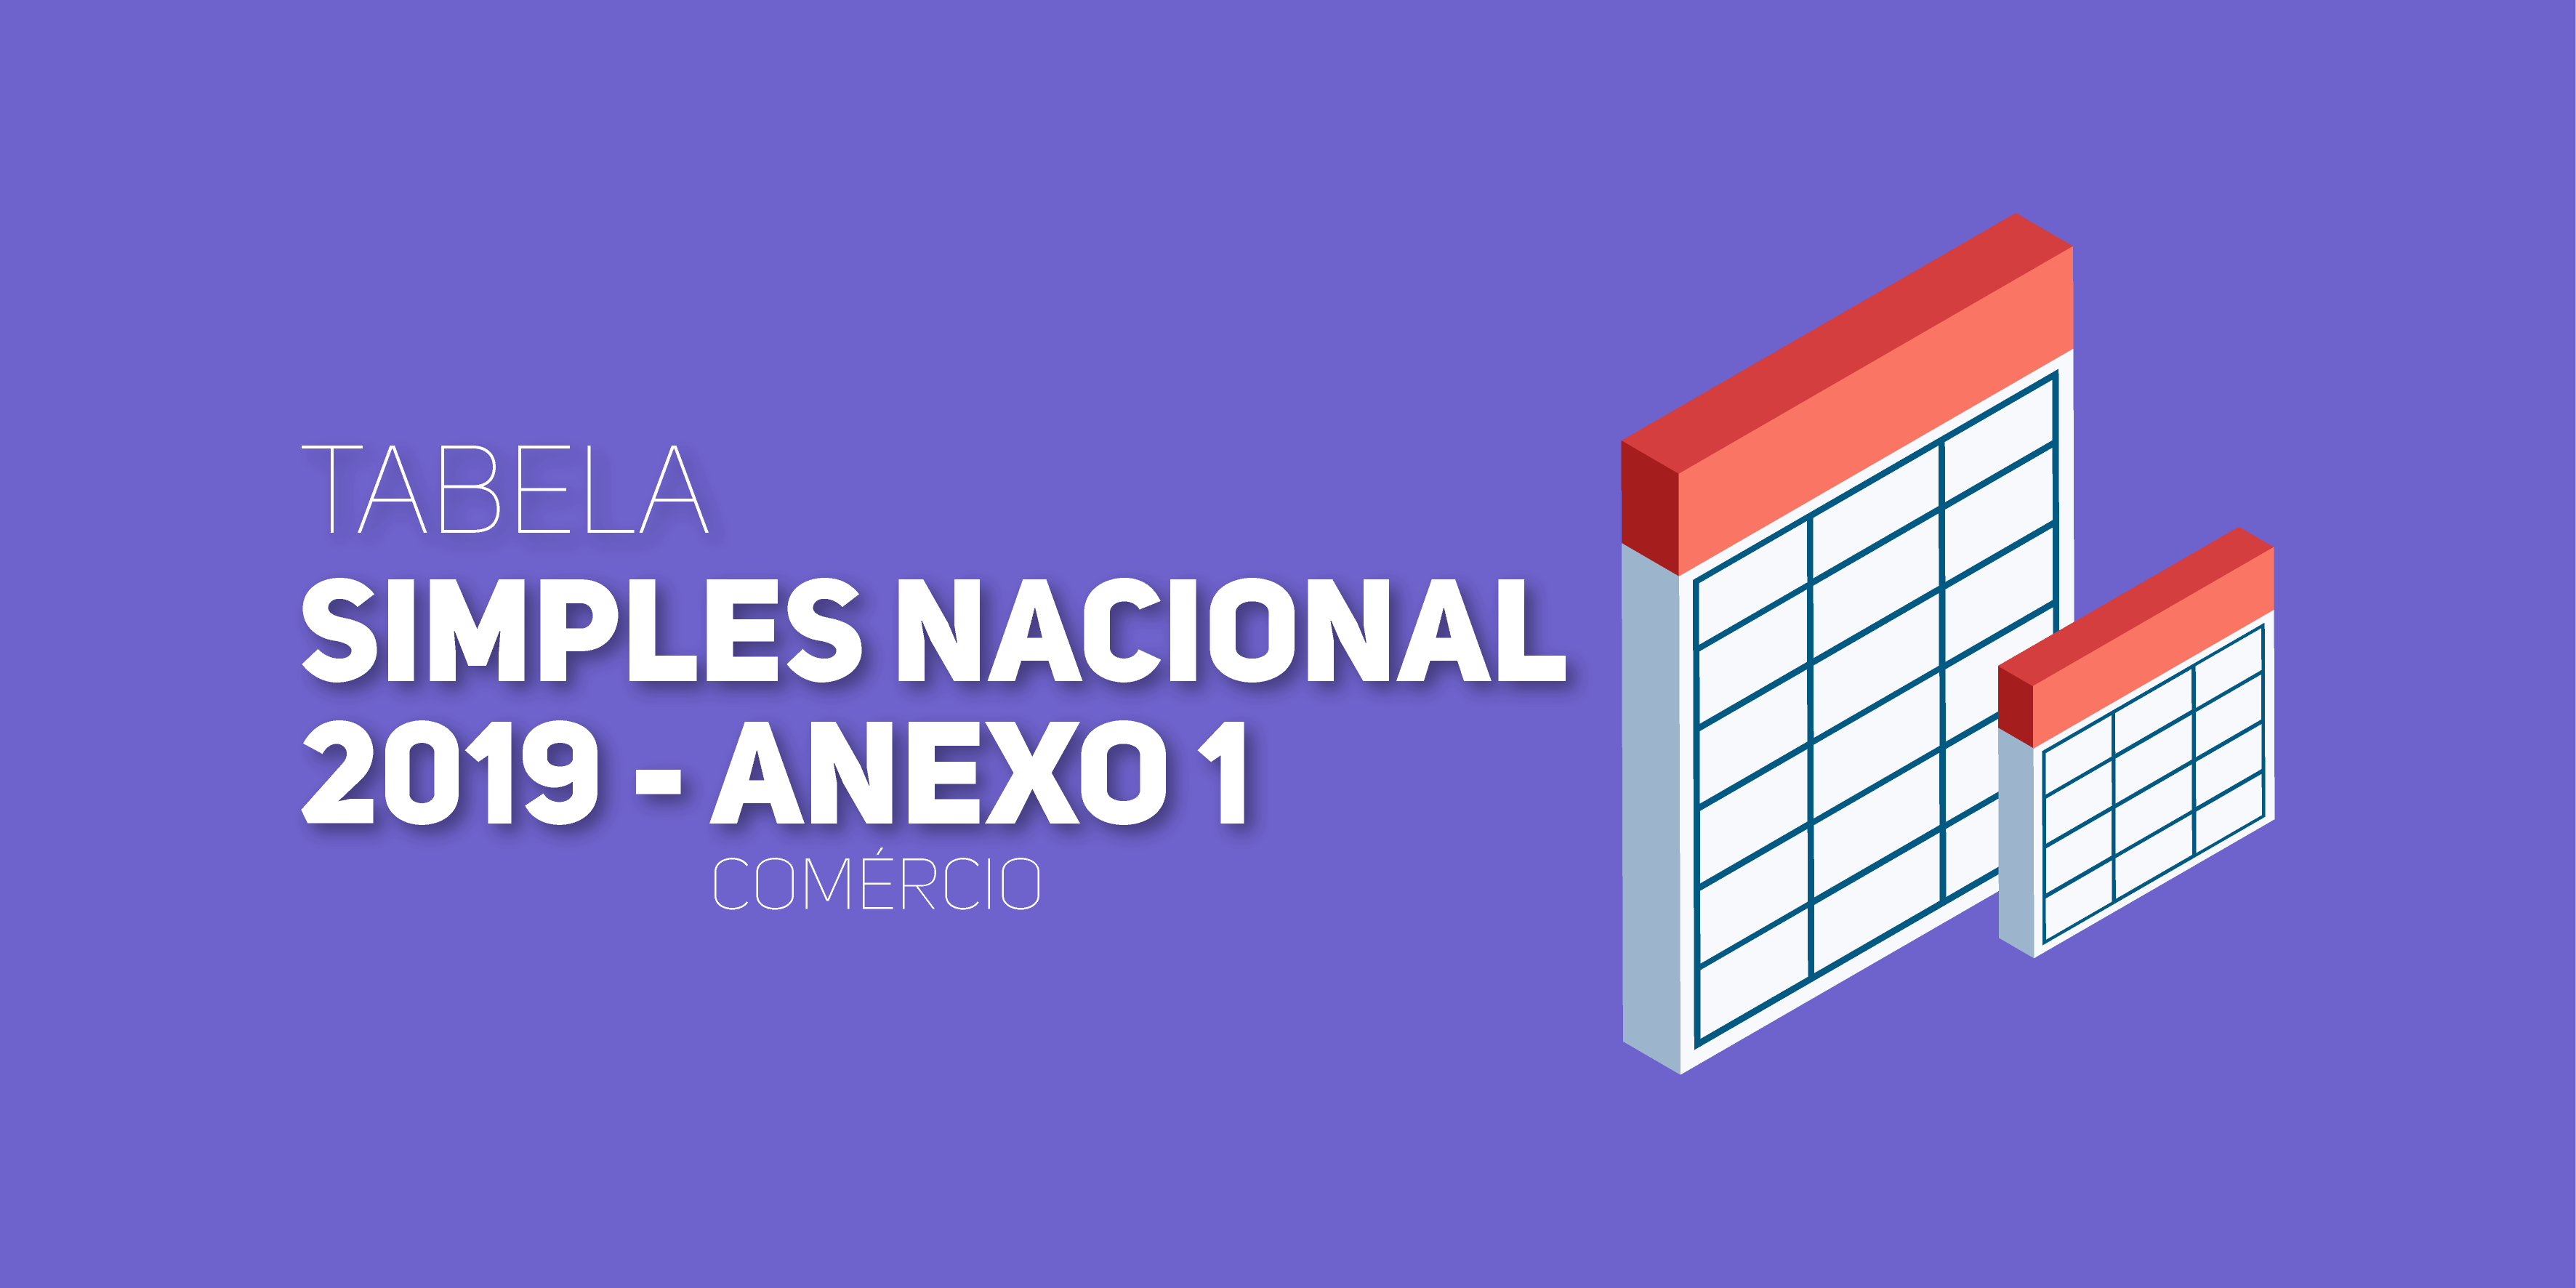 Anexo 1 Da Tabela Do Simples Nacional 2019 Tabela Completa 7773